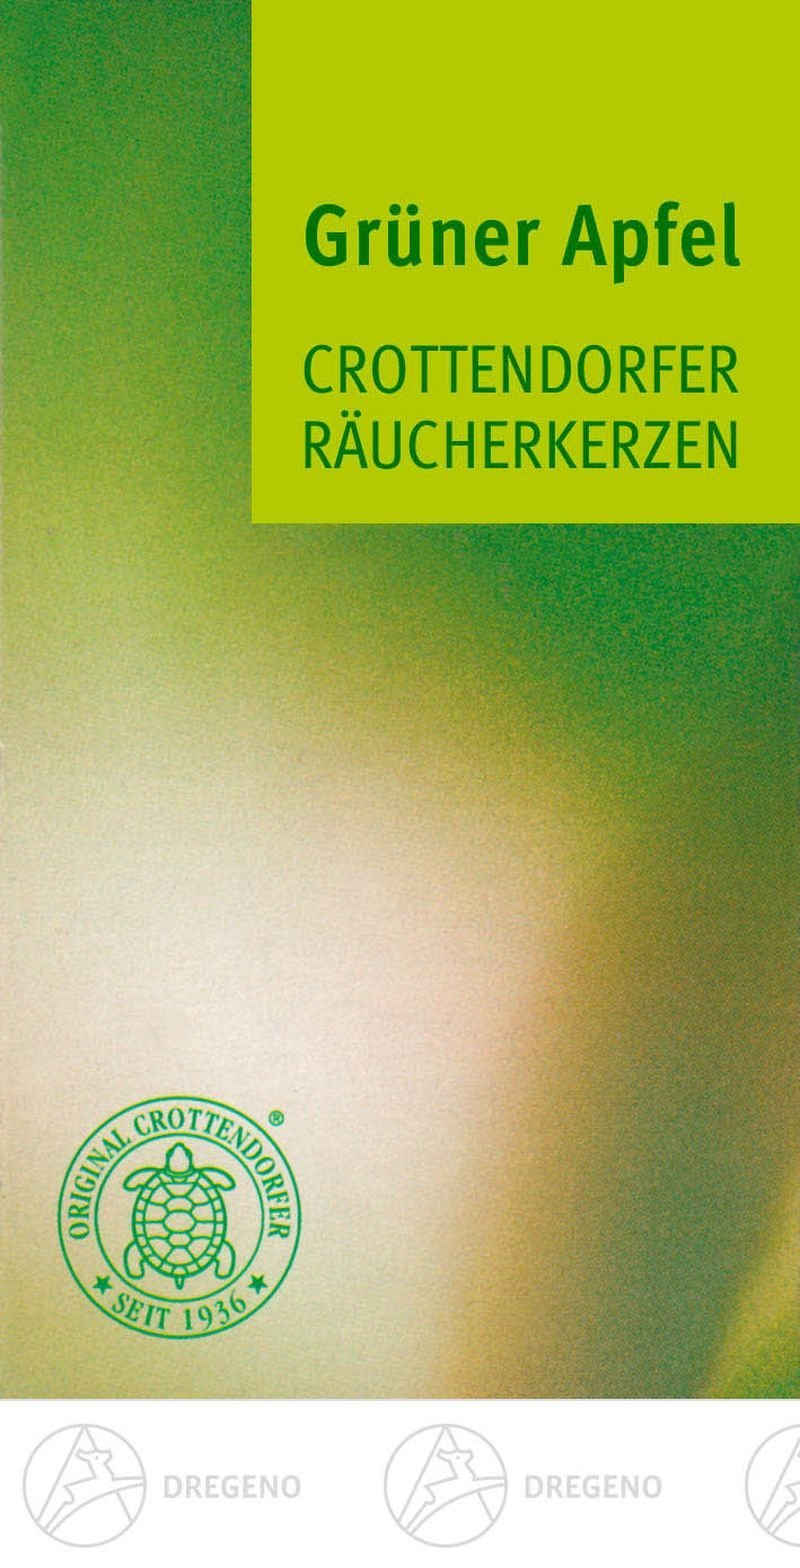 Dregeno Erzgebirge Räuchermännchen Zubehör Crottendorfer Räucherkerzen Grüner Apfel (24) NEU, Räucherkerzen Grüner Apfel